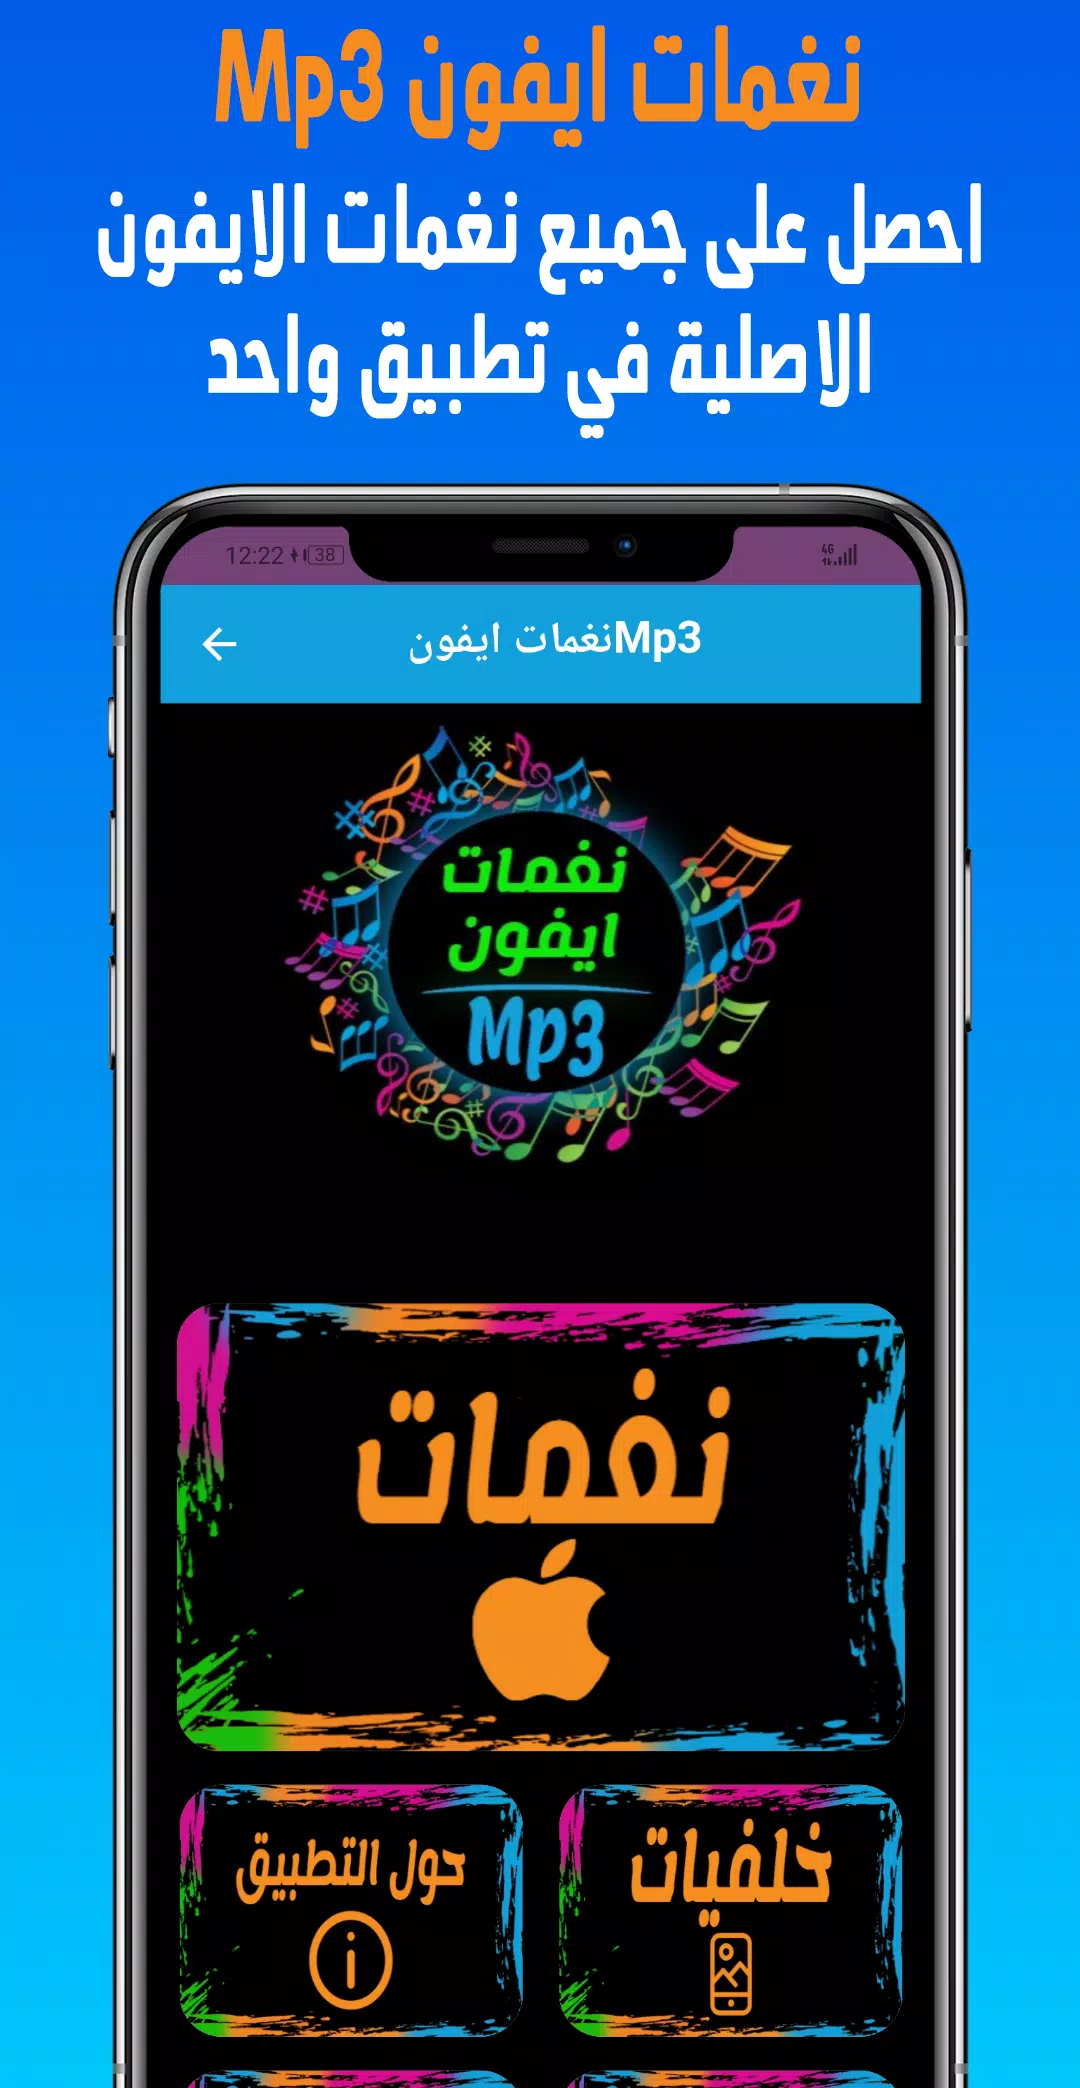 Descarga de APK de Tonos de llamada iPhone MP3 para Android